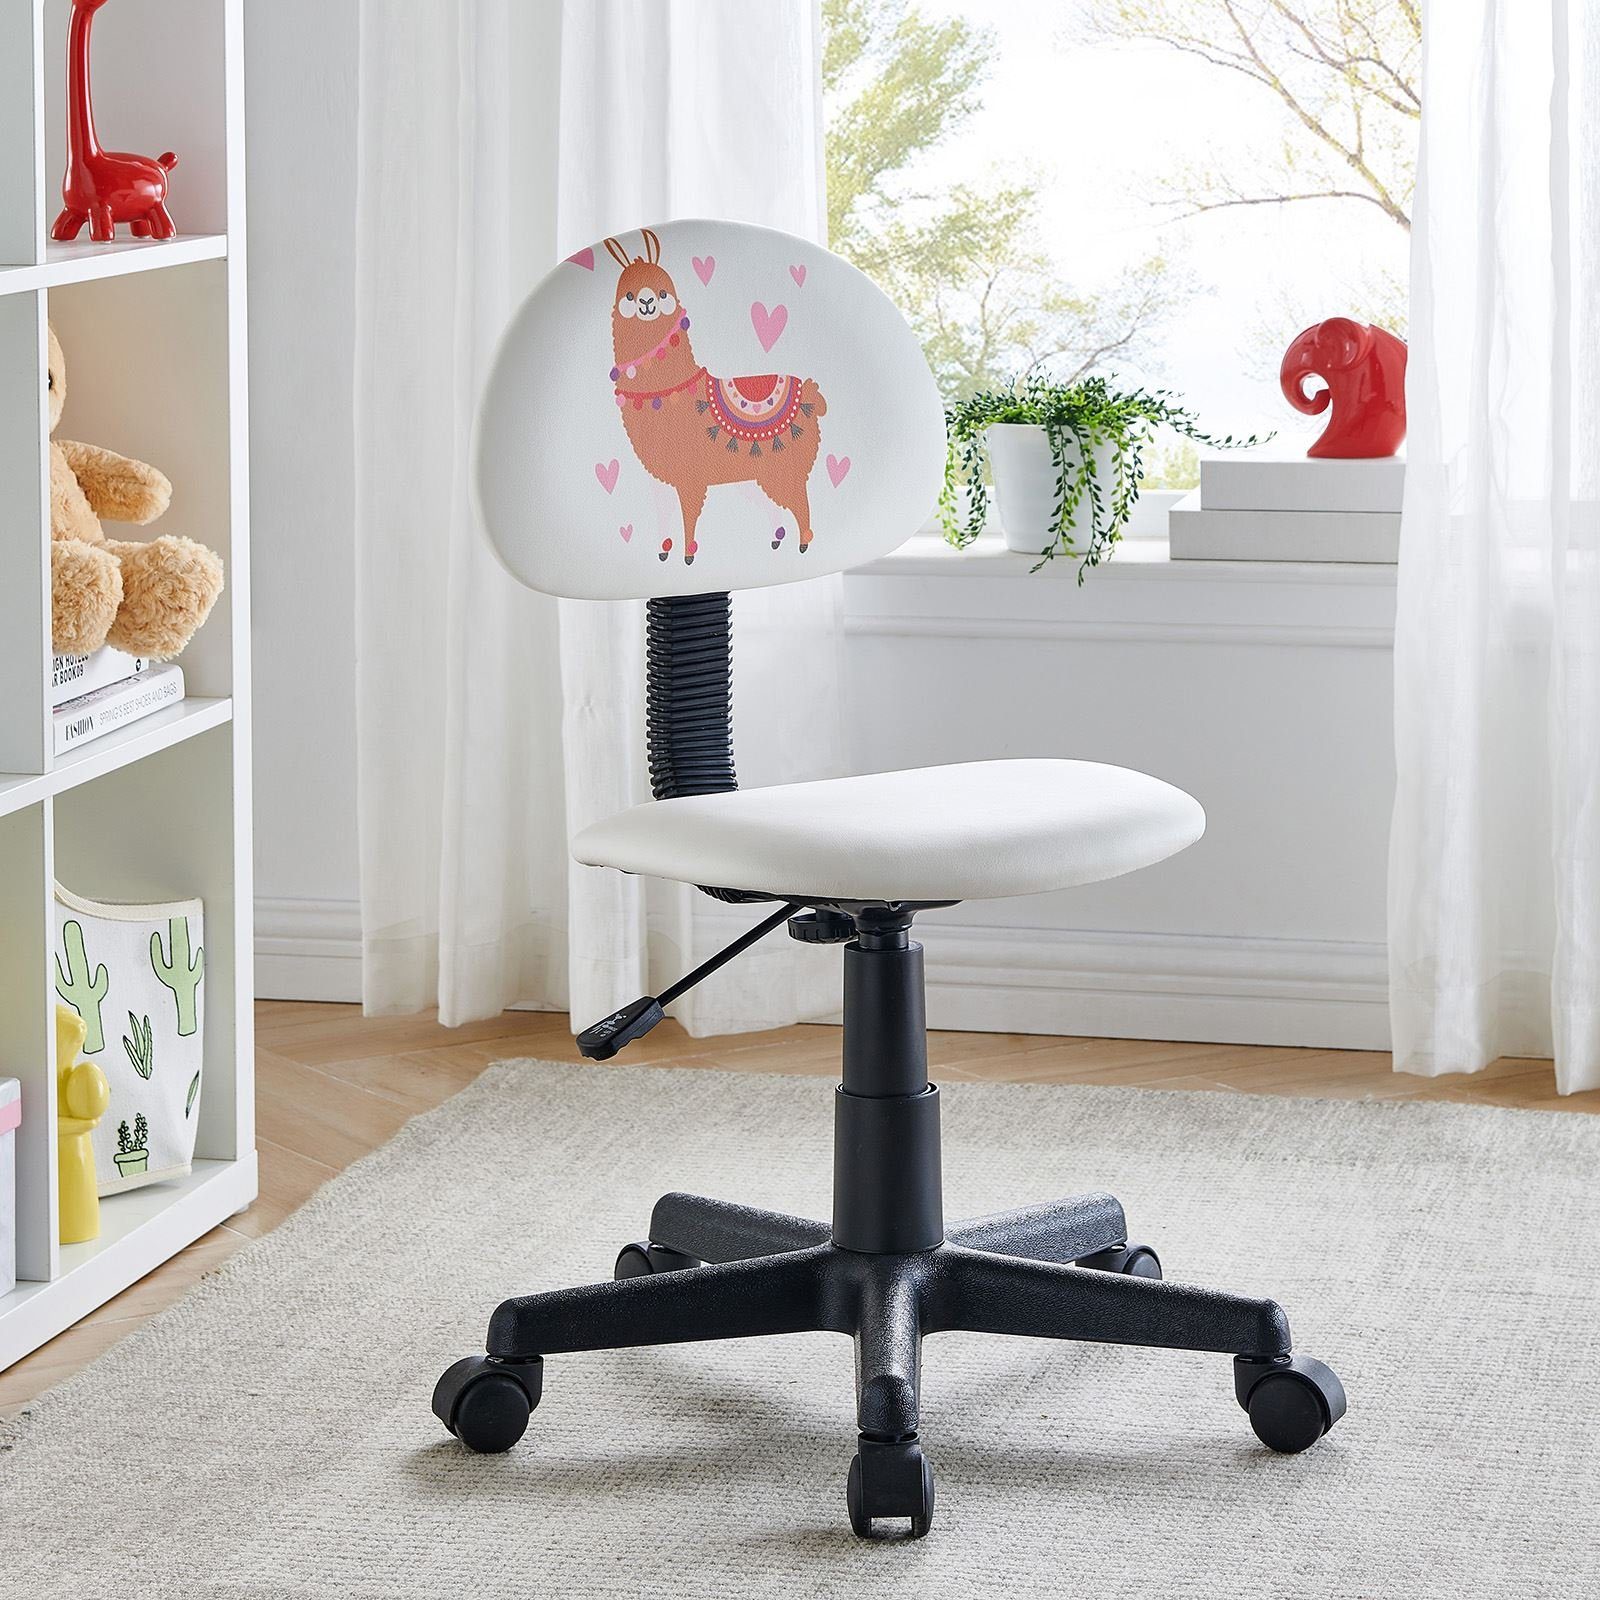 CARO-Möbel Drehstuhl für Bezug weiß mit ALPACA, Kinder Drehstuhl Kunstleder Kinderdrehs höhenverstellbar